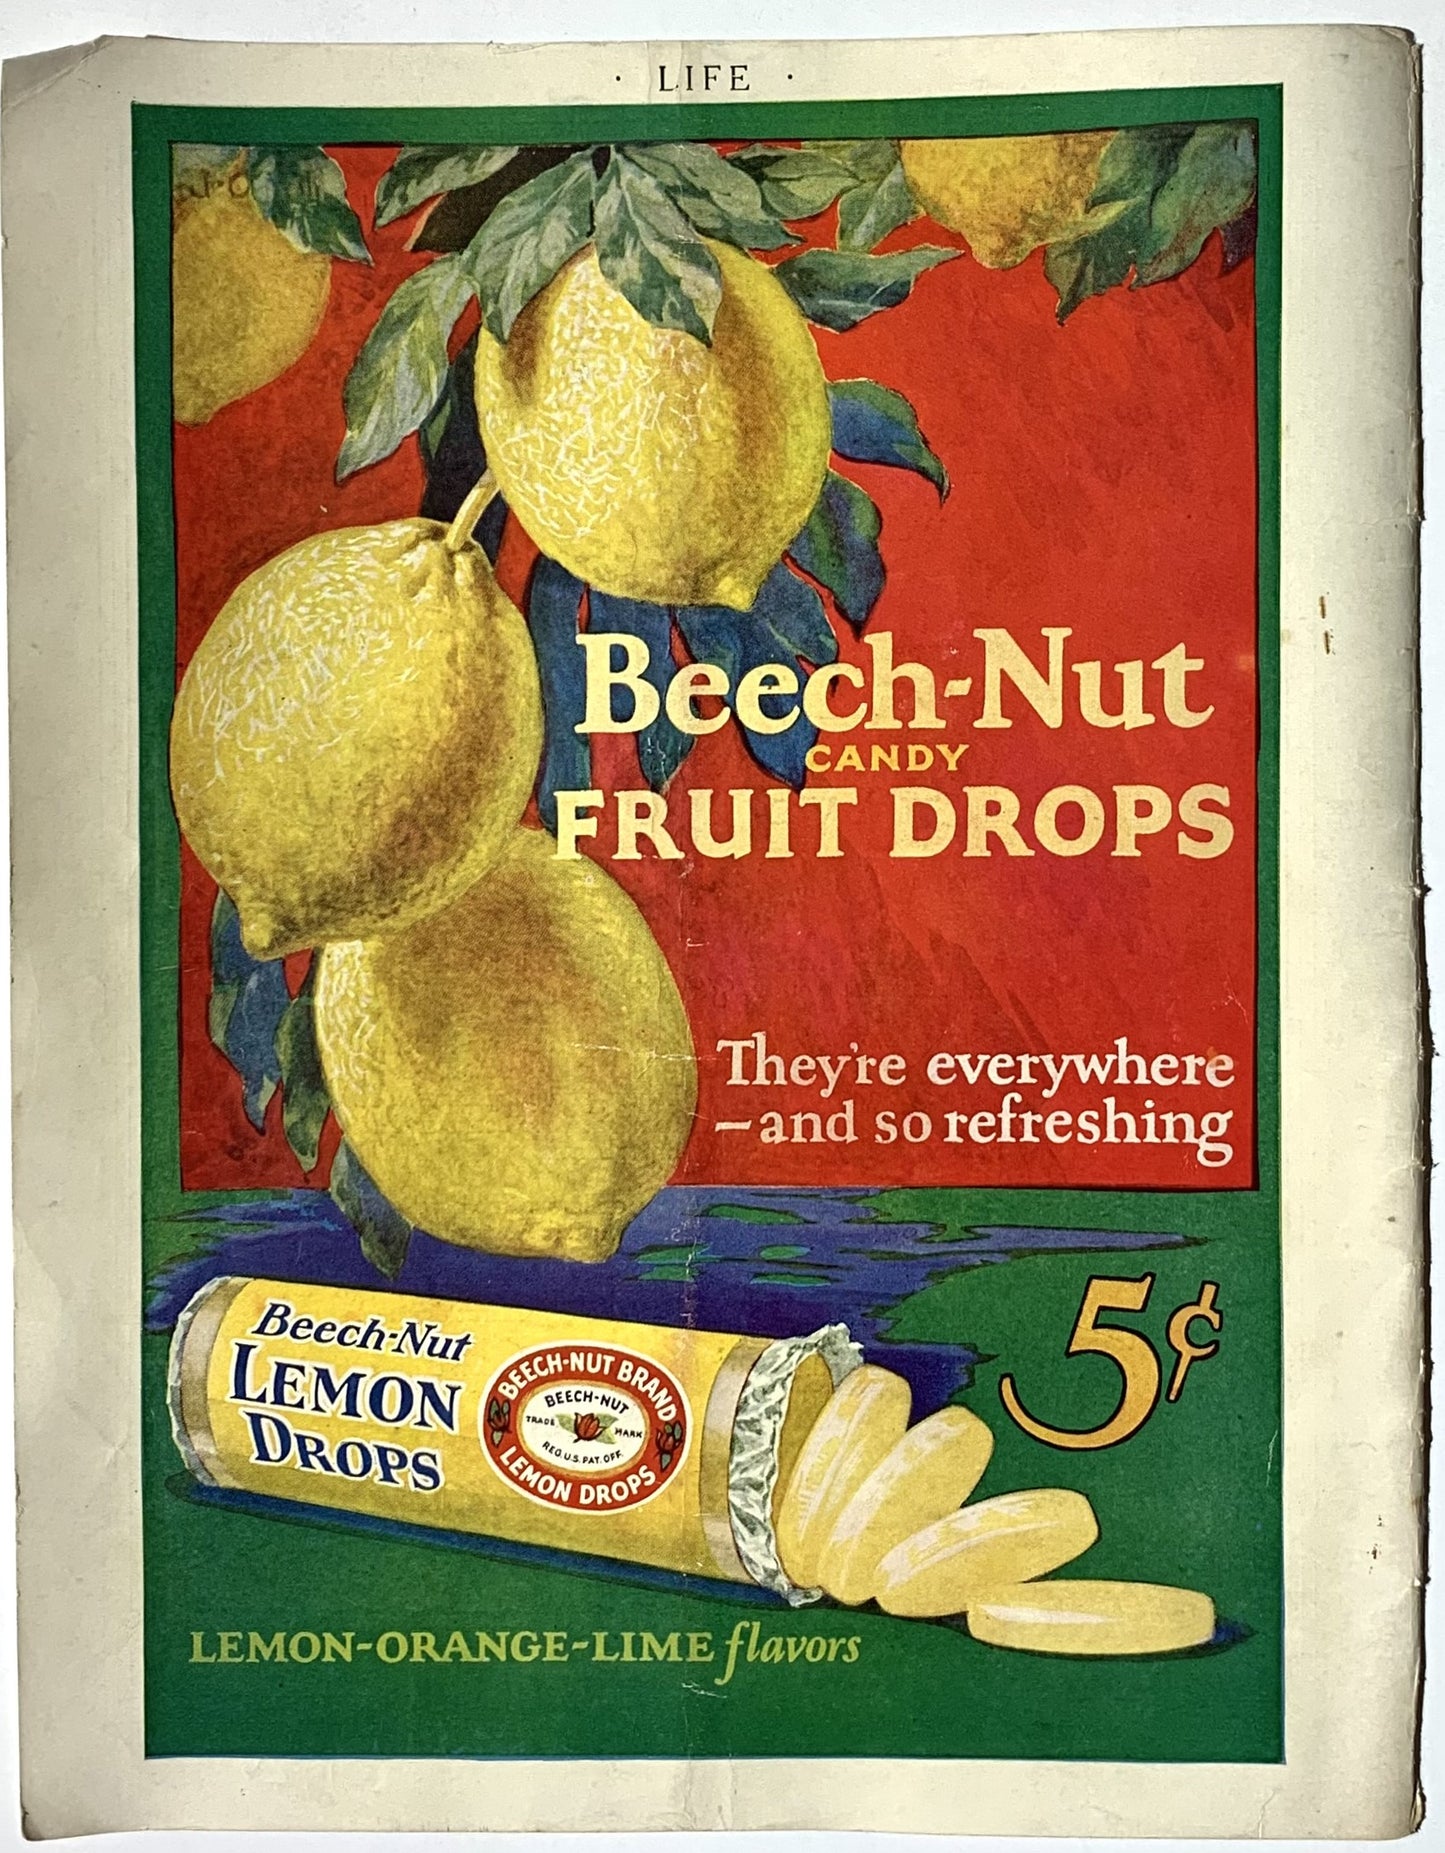 Beech-Nut Fruit Drops Ad